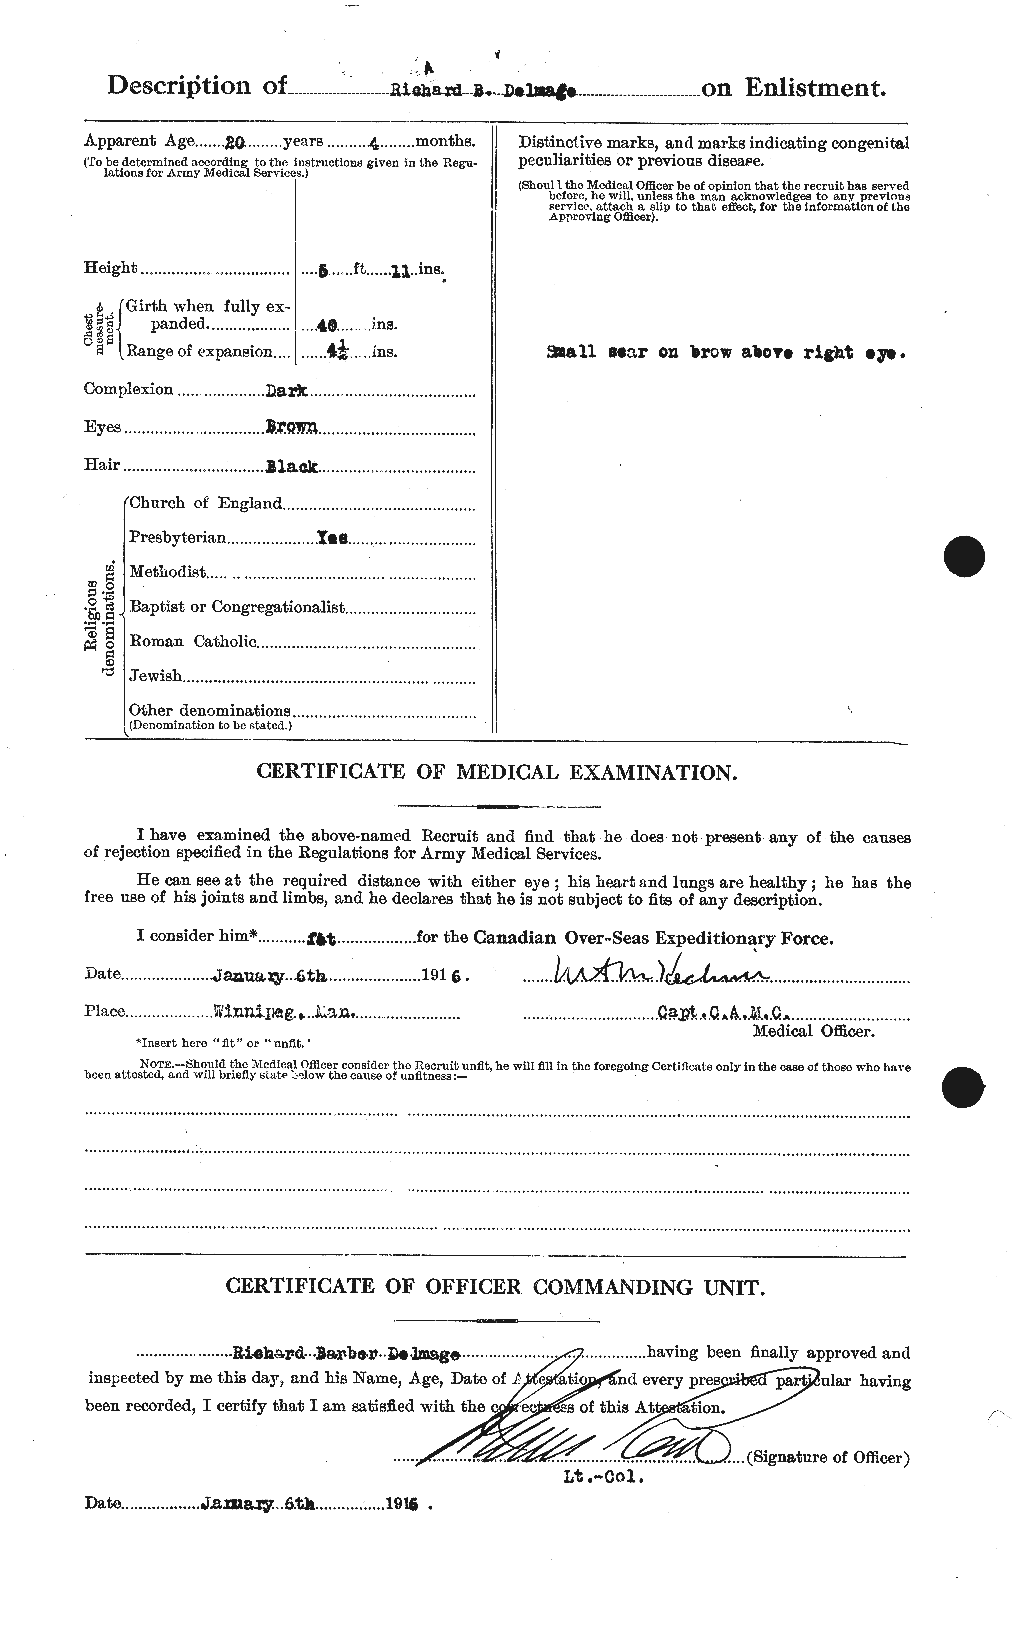 Dossiers du Personnel de la Première Guerre mondiale - CEC 287114b